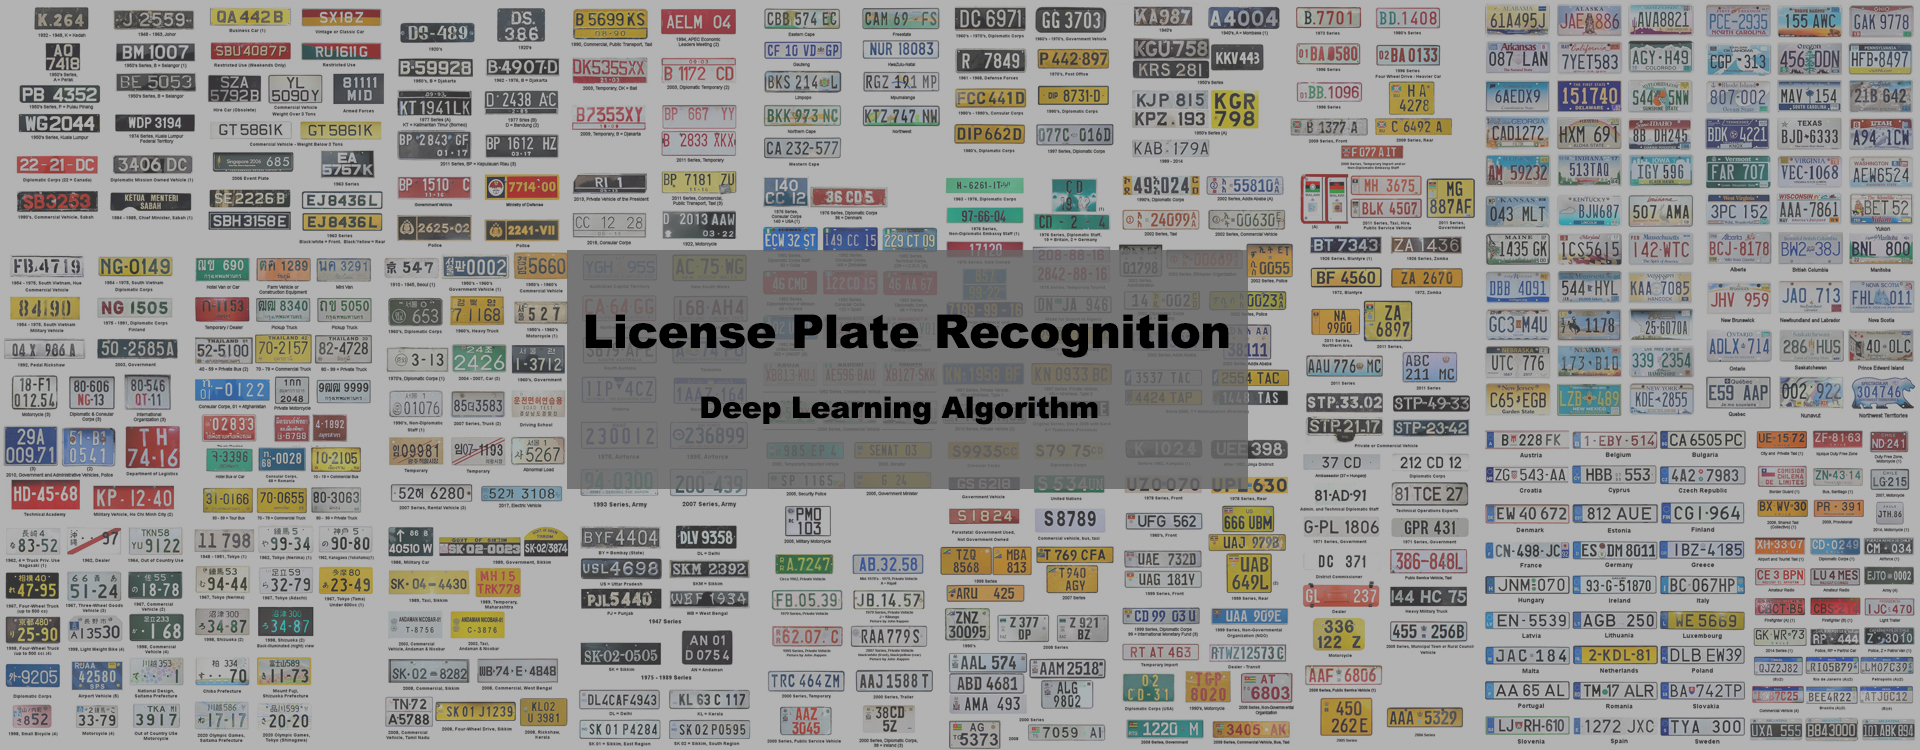 RICOMTECK Vehicle Access Control Parking Management License Plate Recognition ALPR ANPR LPR Camera